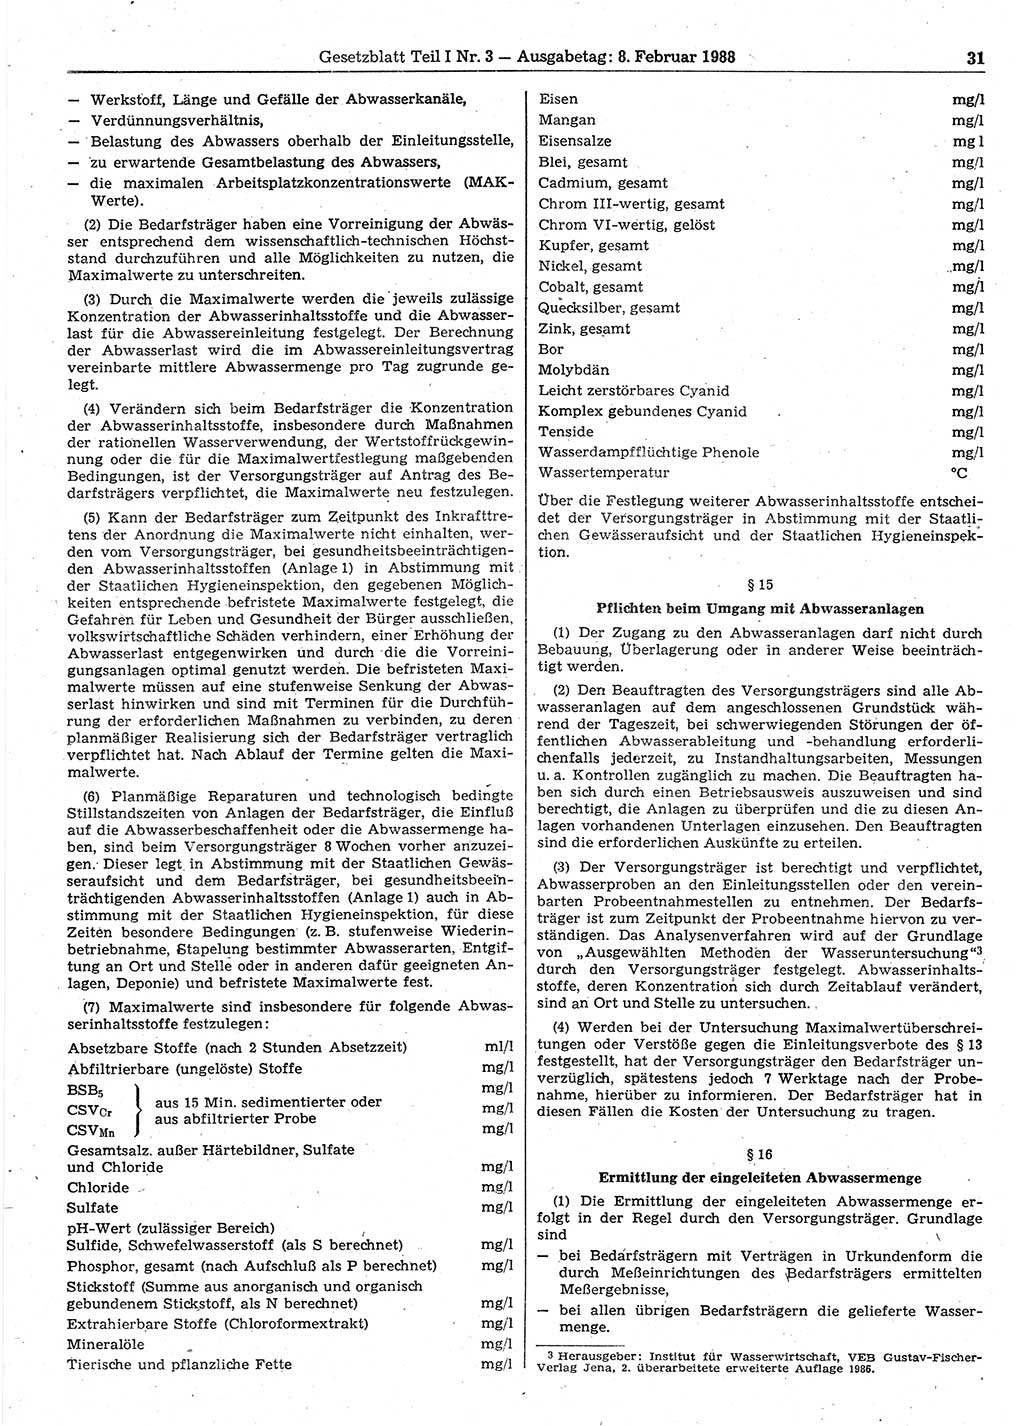 Gesetzblatt (GBl.) der Deutschen Demokratischen Republik (DDR) Teil Ⅰ 1988, Seite 31 (GBl. DDR Ⅰ 1988, S. 31)